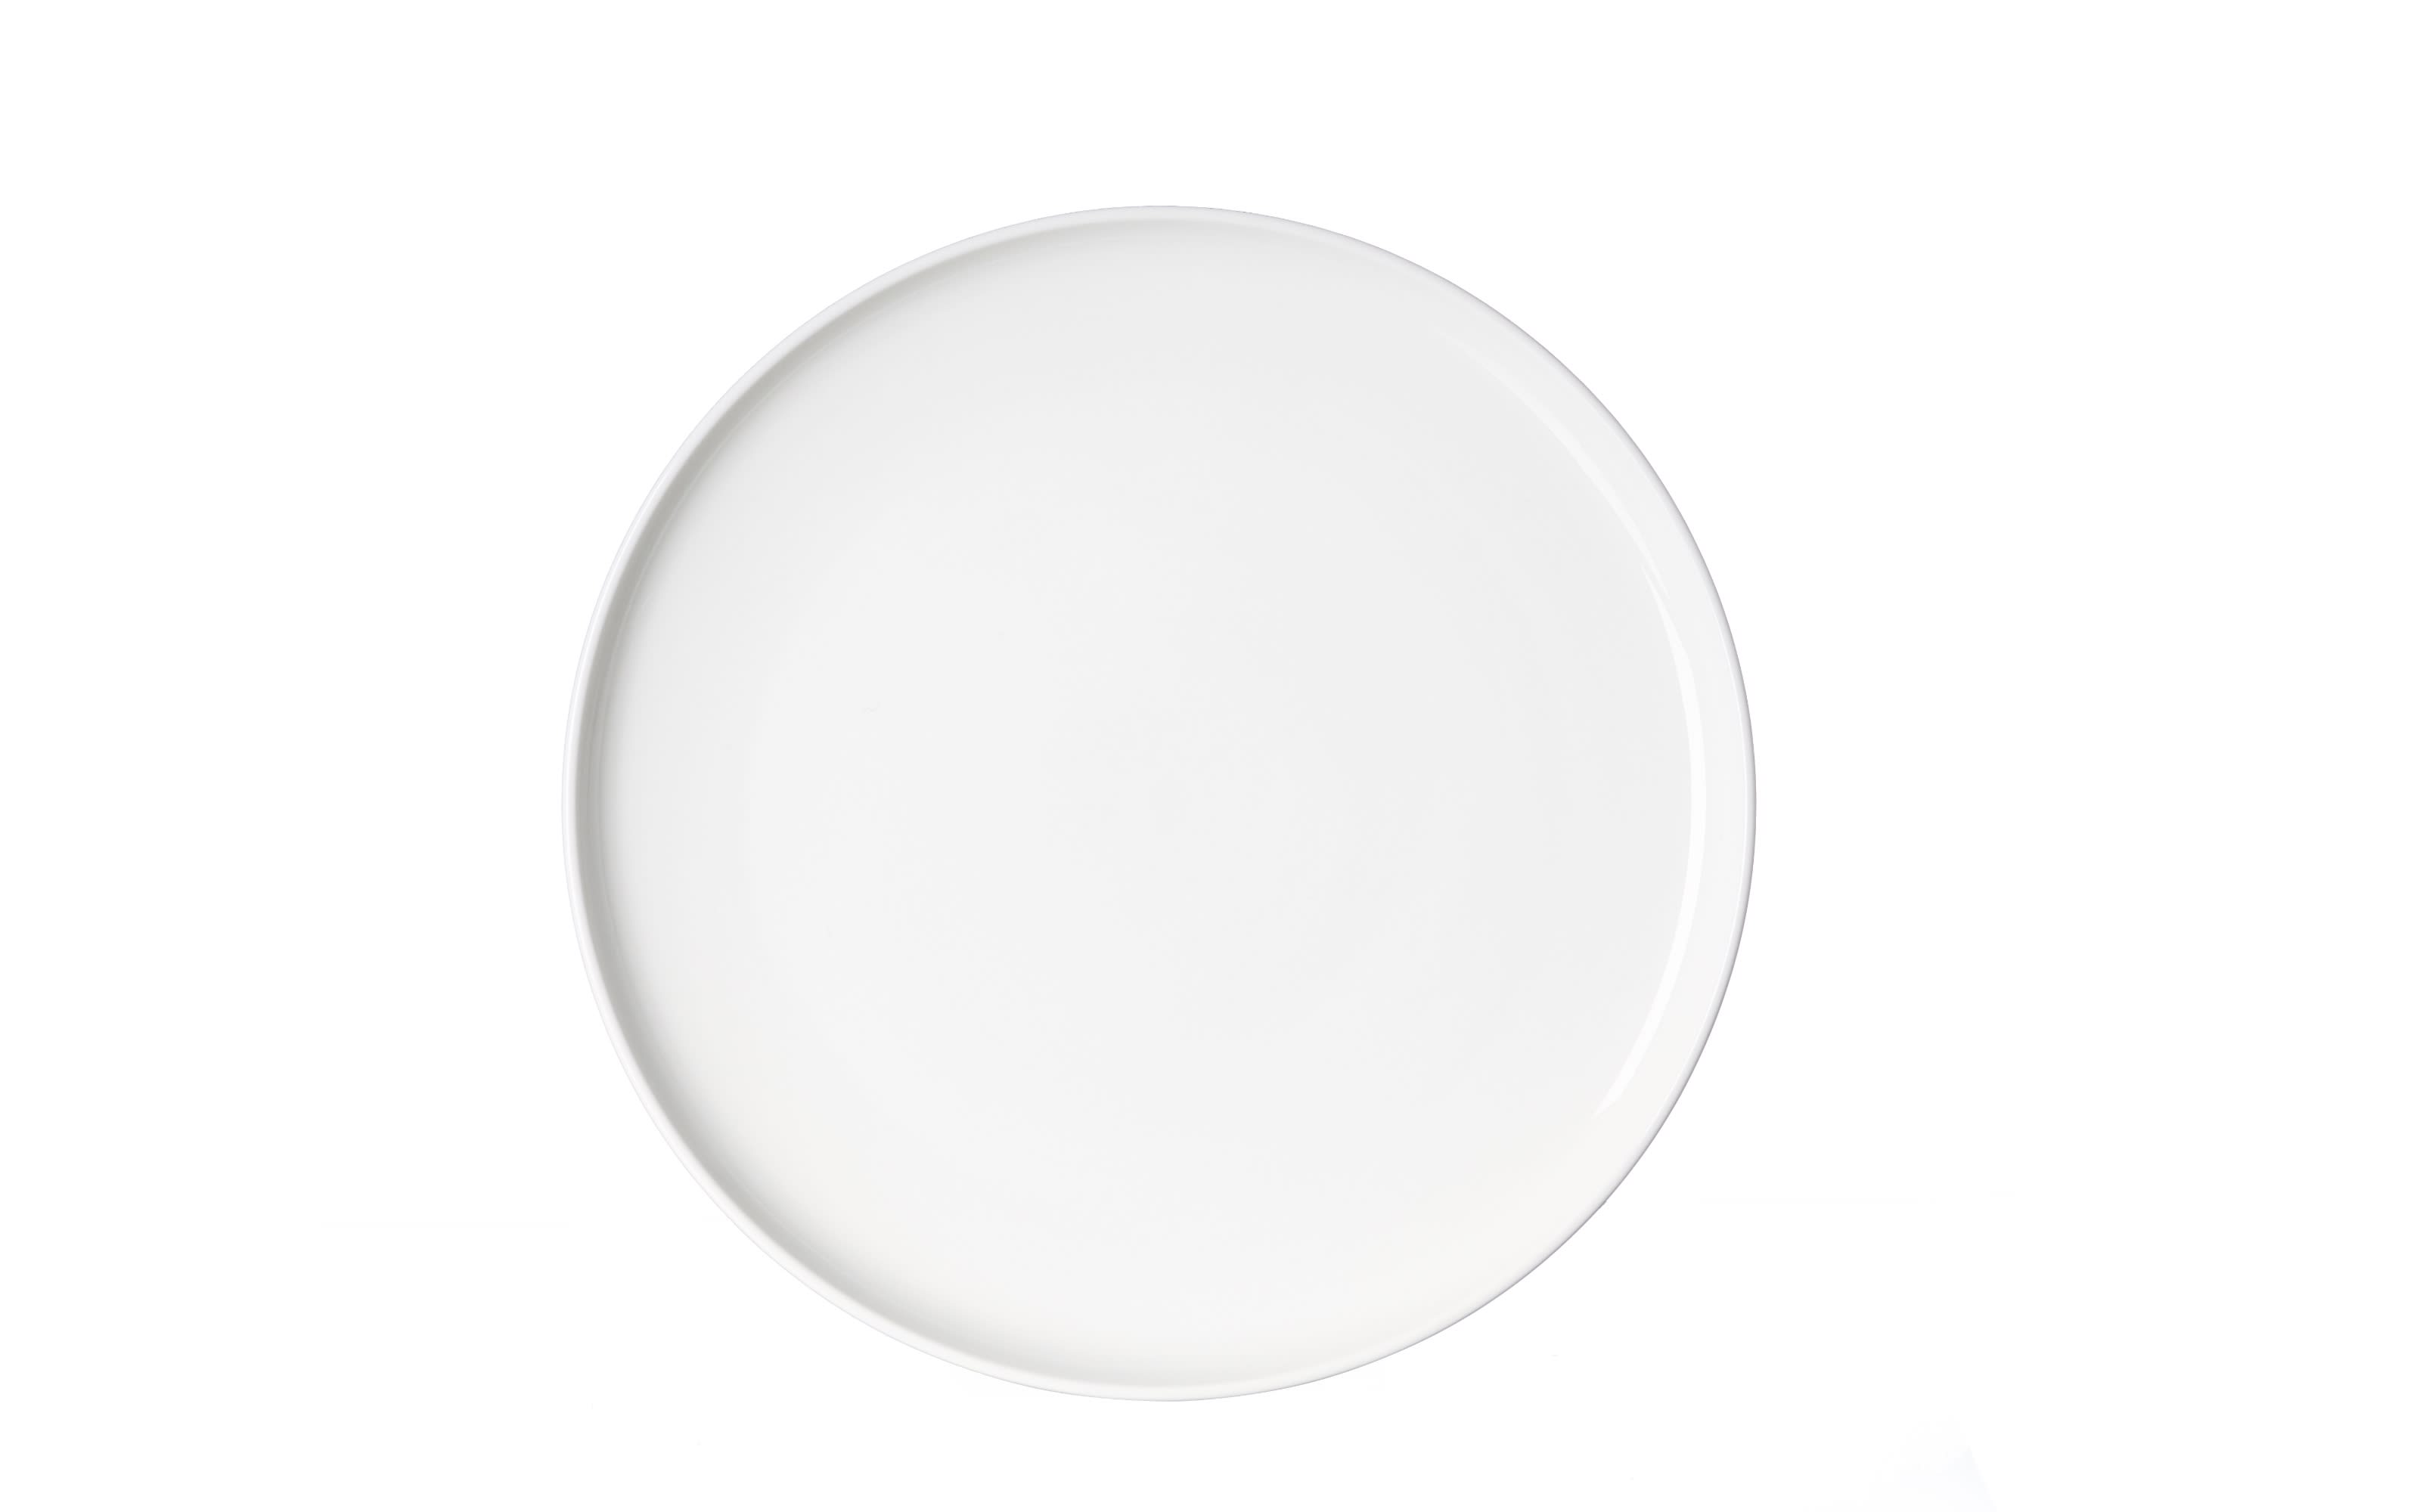 Frühstücksteller Skagen, weiß, 21,5 cm